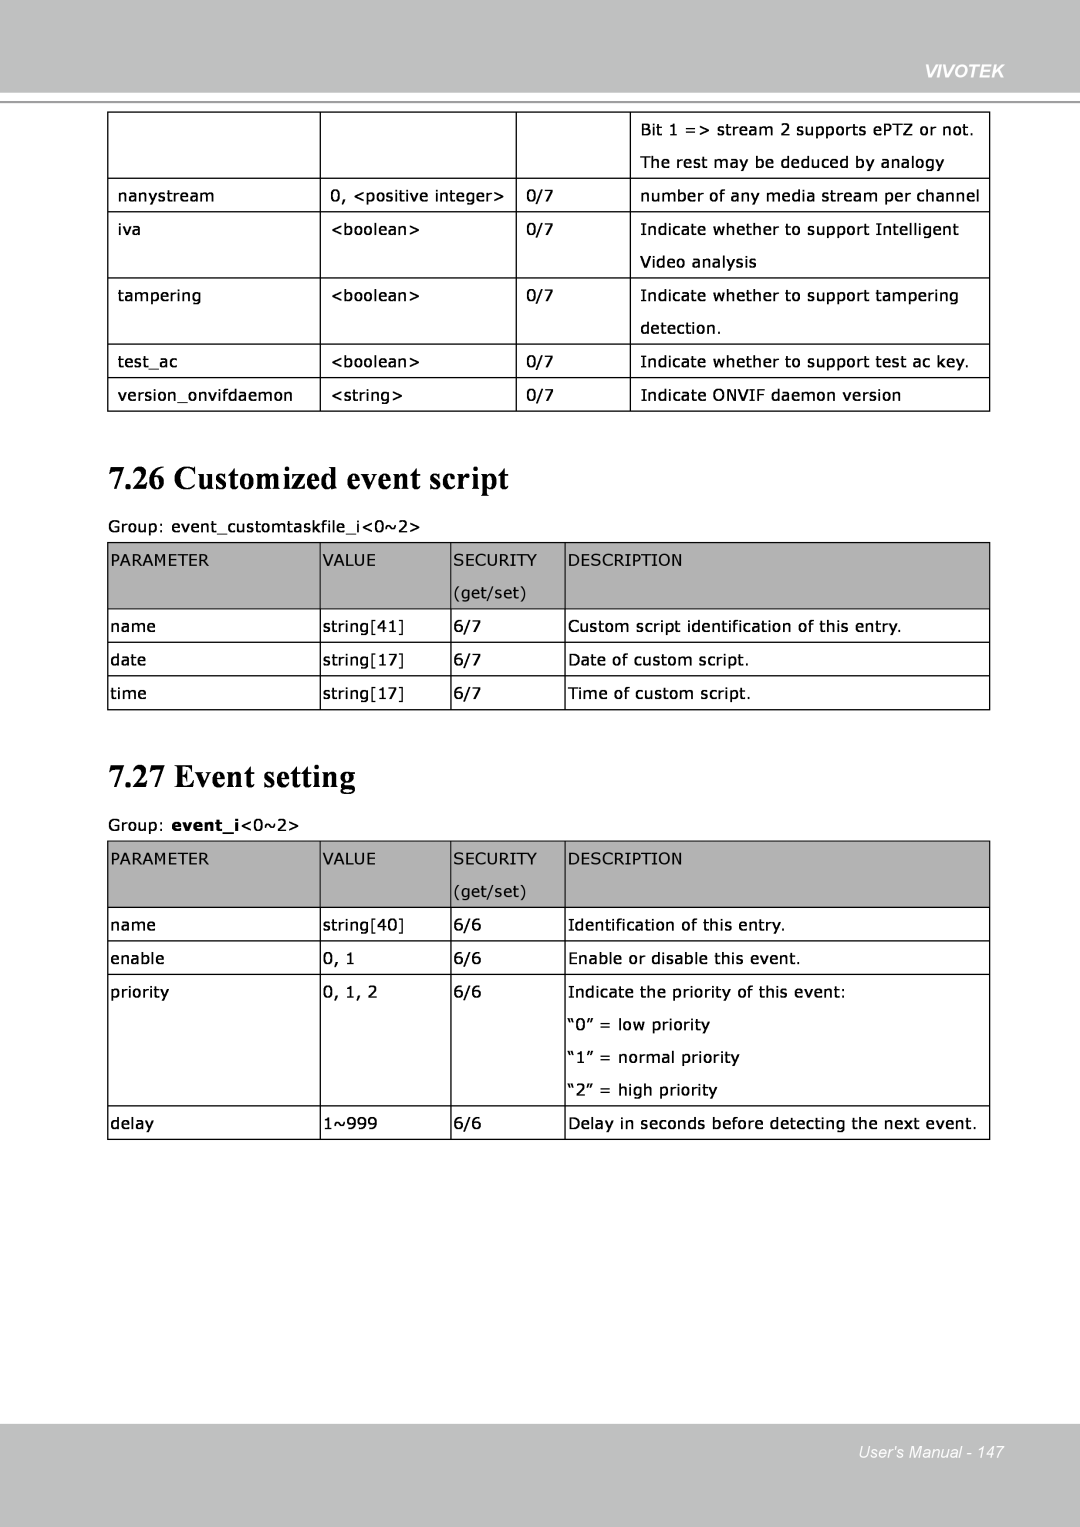 Vivotek IP8151 manual Customized event script, Event setting, Vivotek, Users Manual 